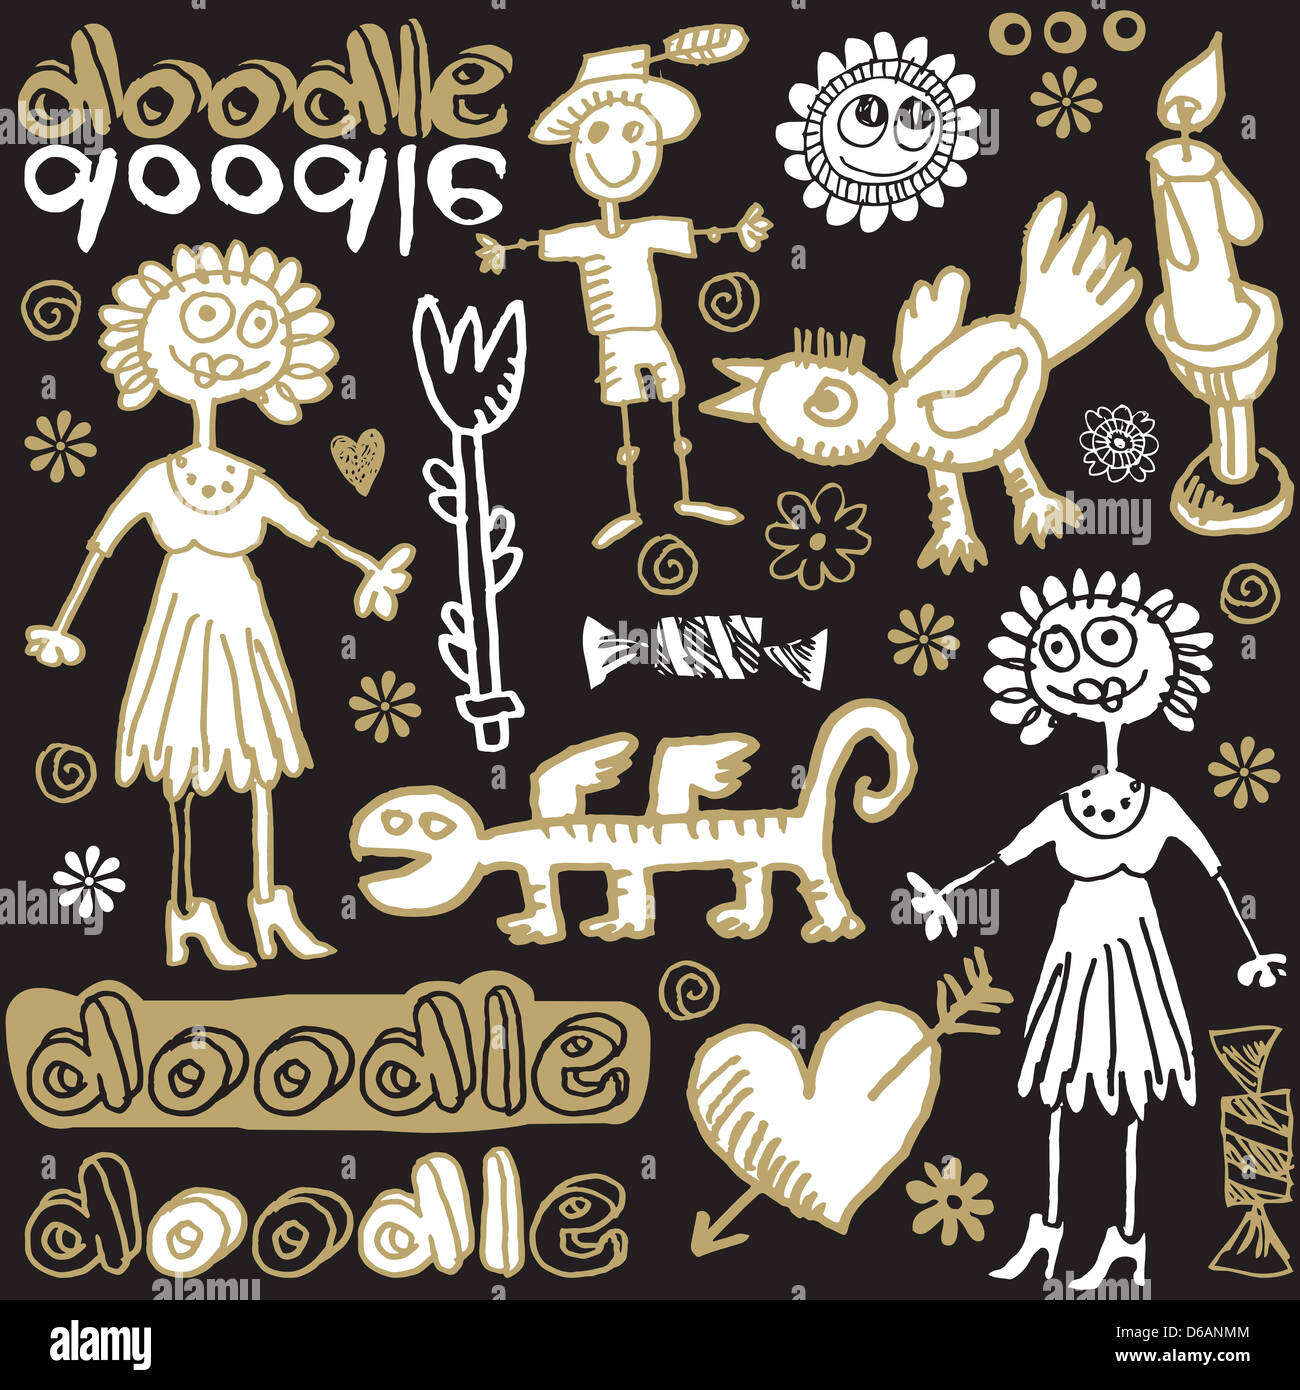 Crazy doodle set, disegnati a mano gli elementi di design Foto Stock